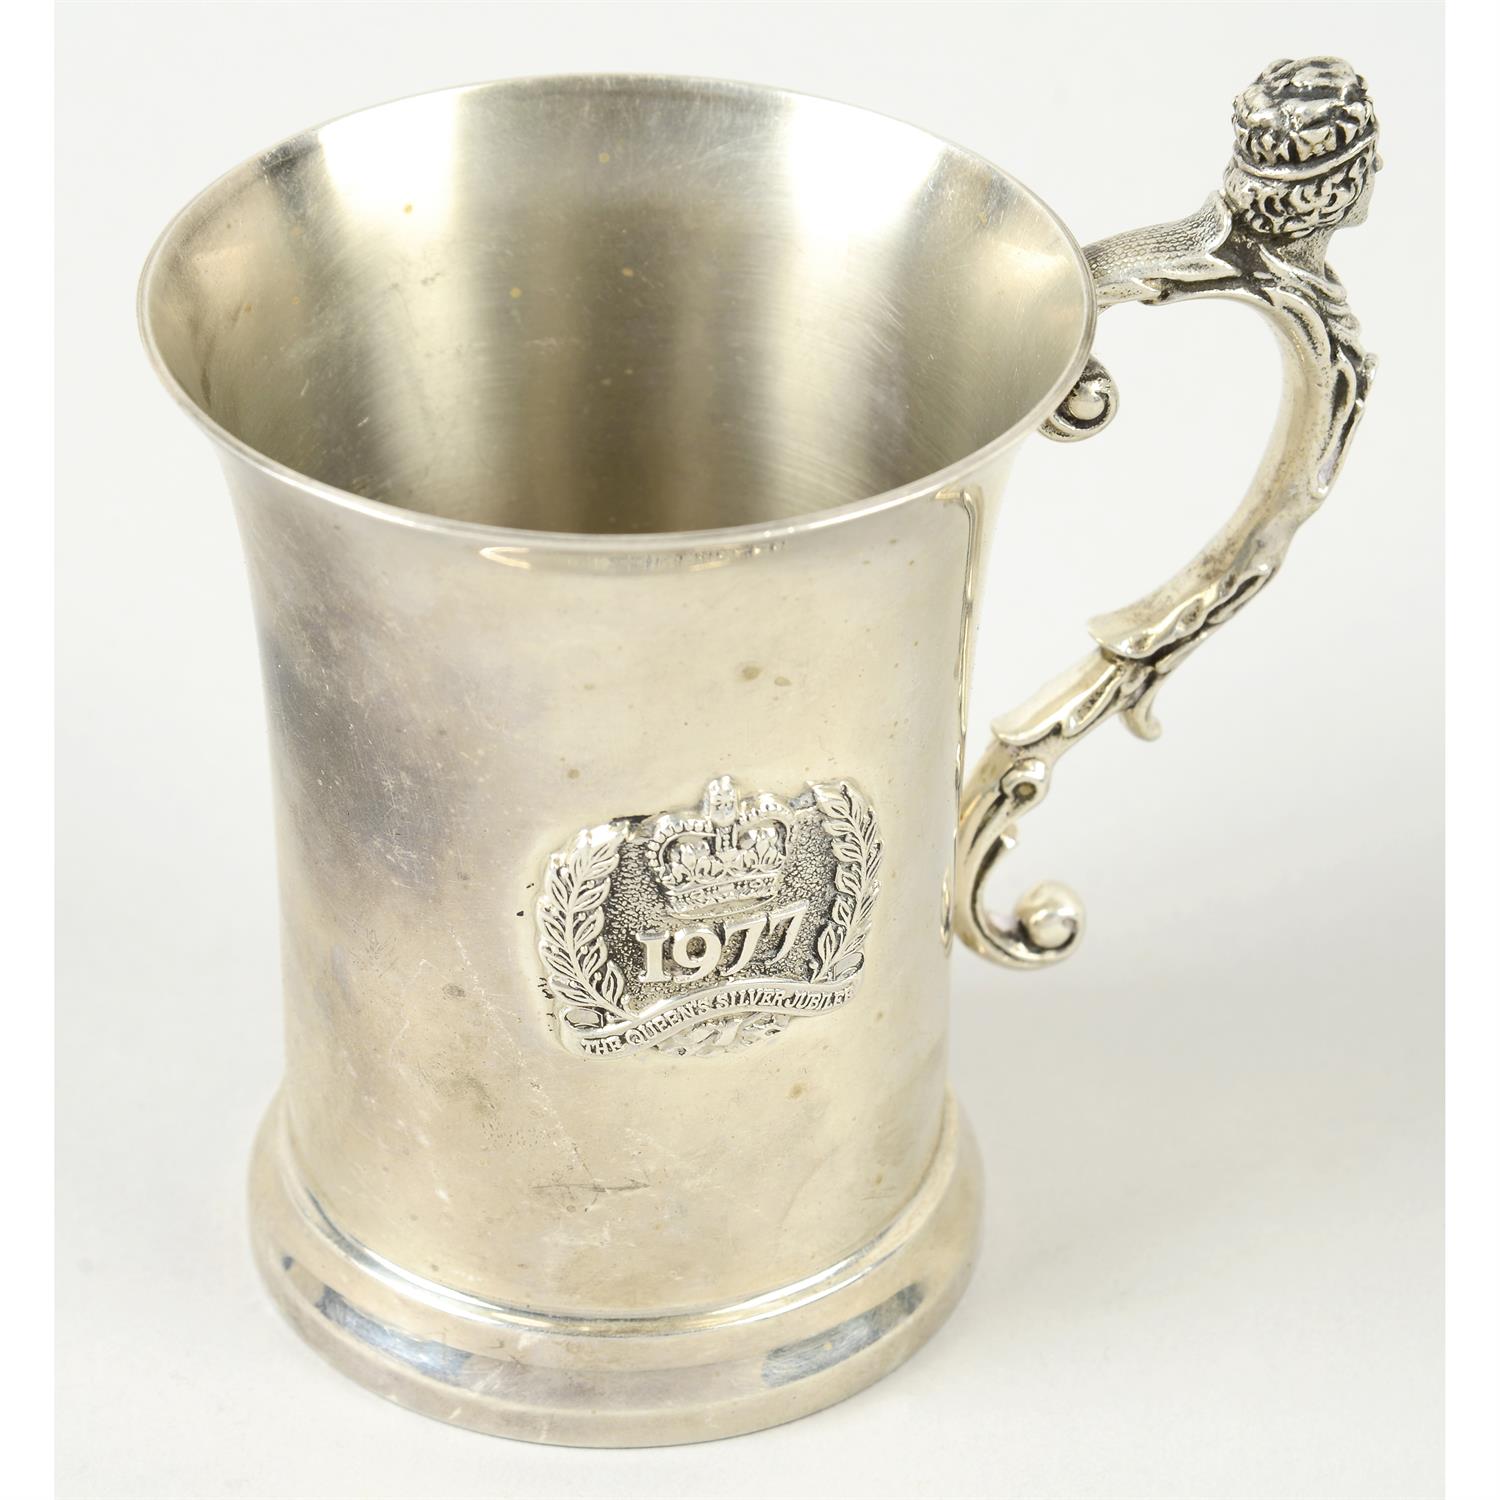 A Silver Jubilee commemorative silver mug.